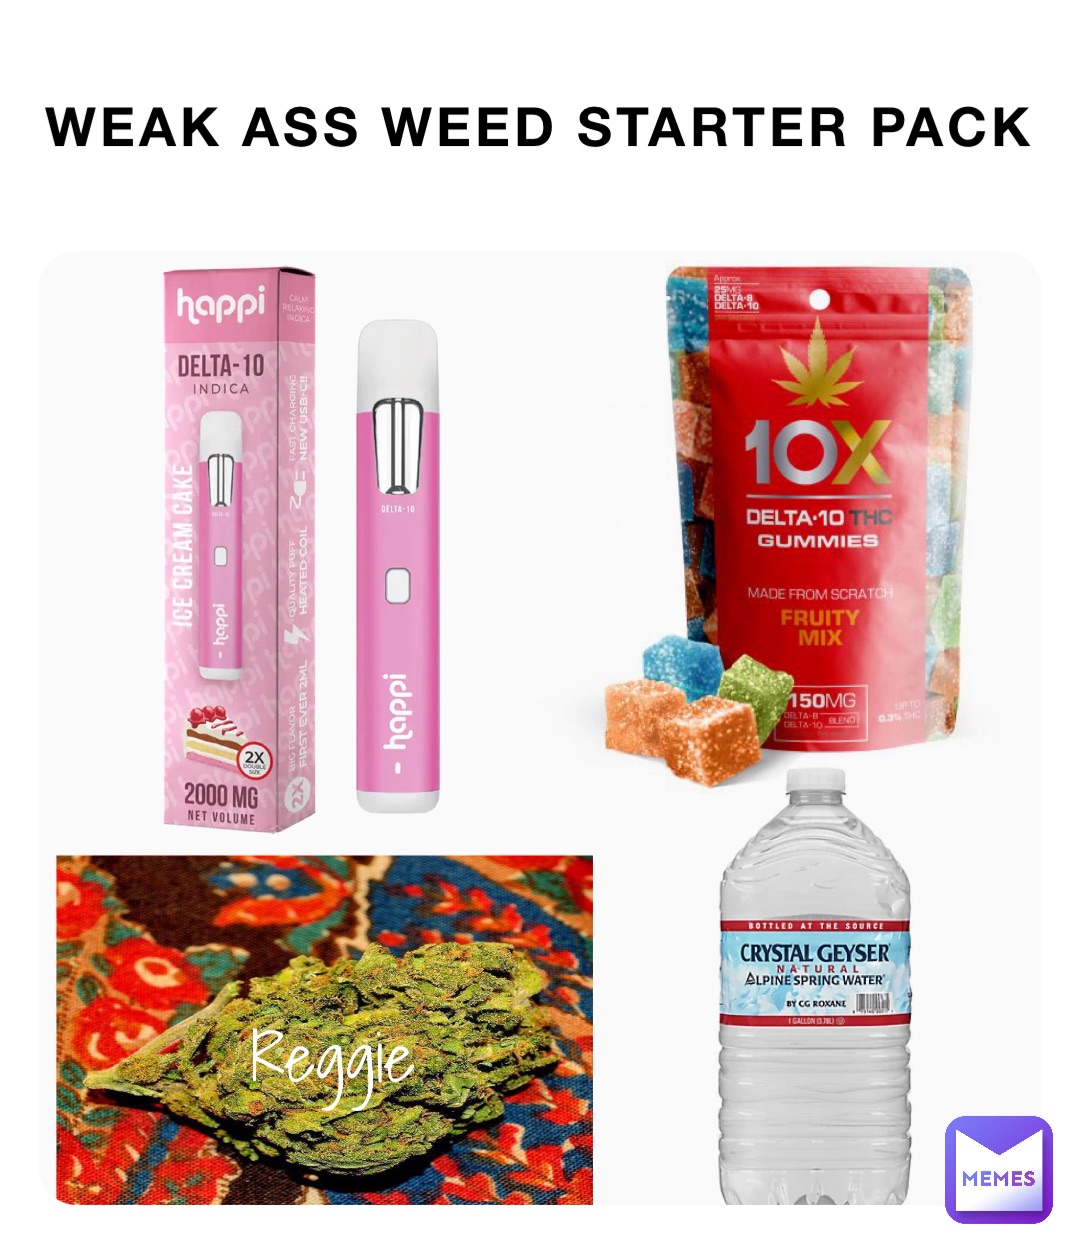 Weak ass weed starter pack